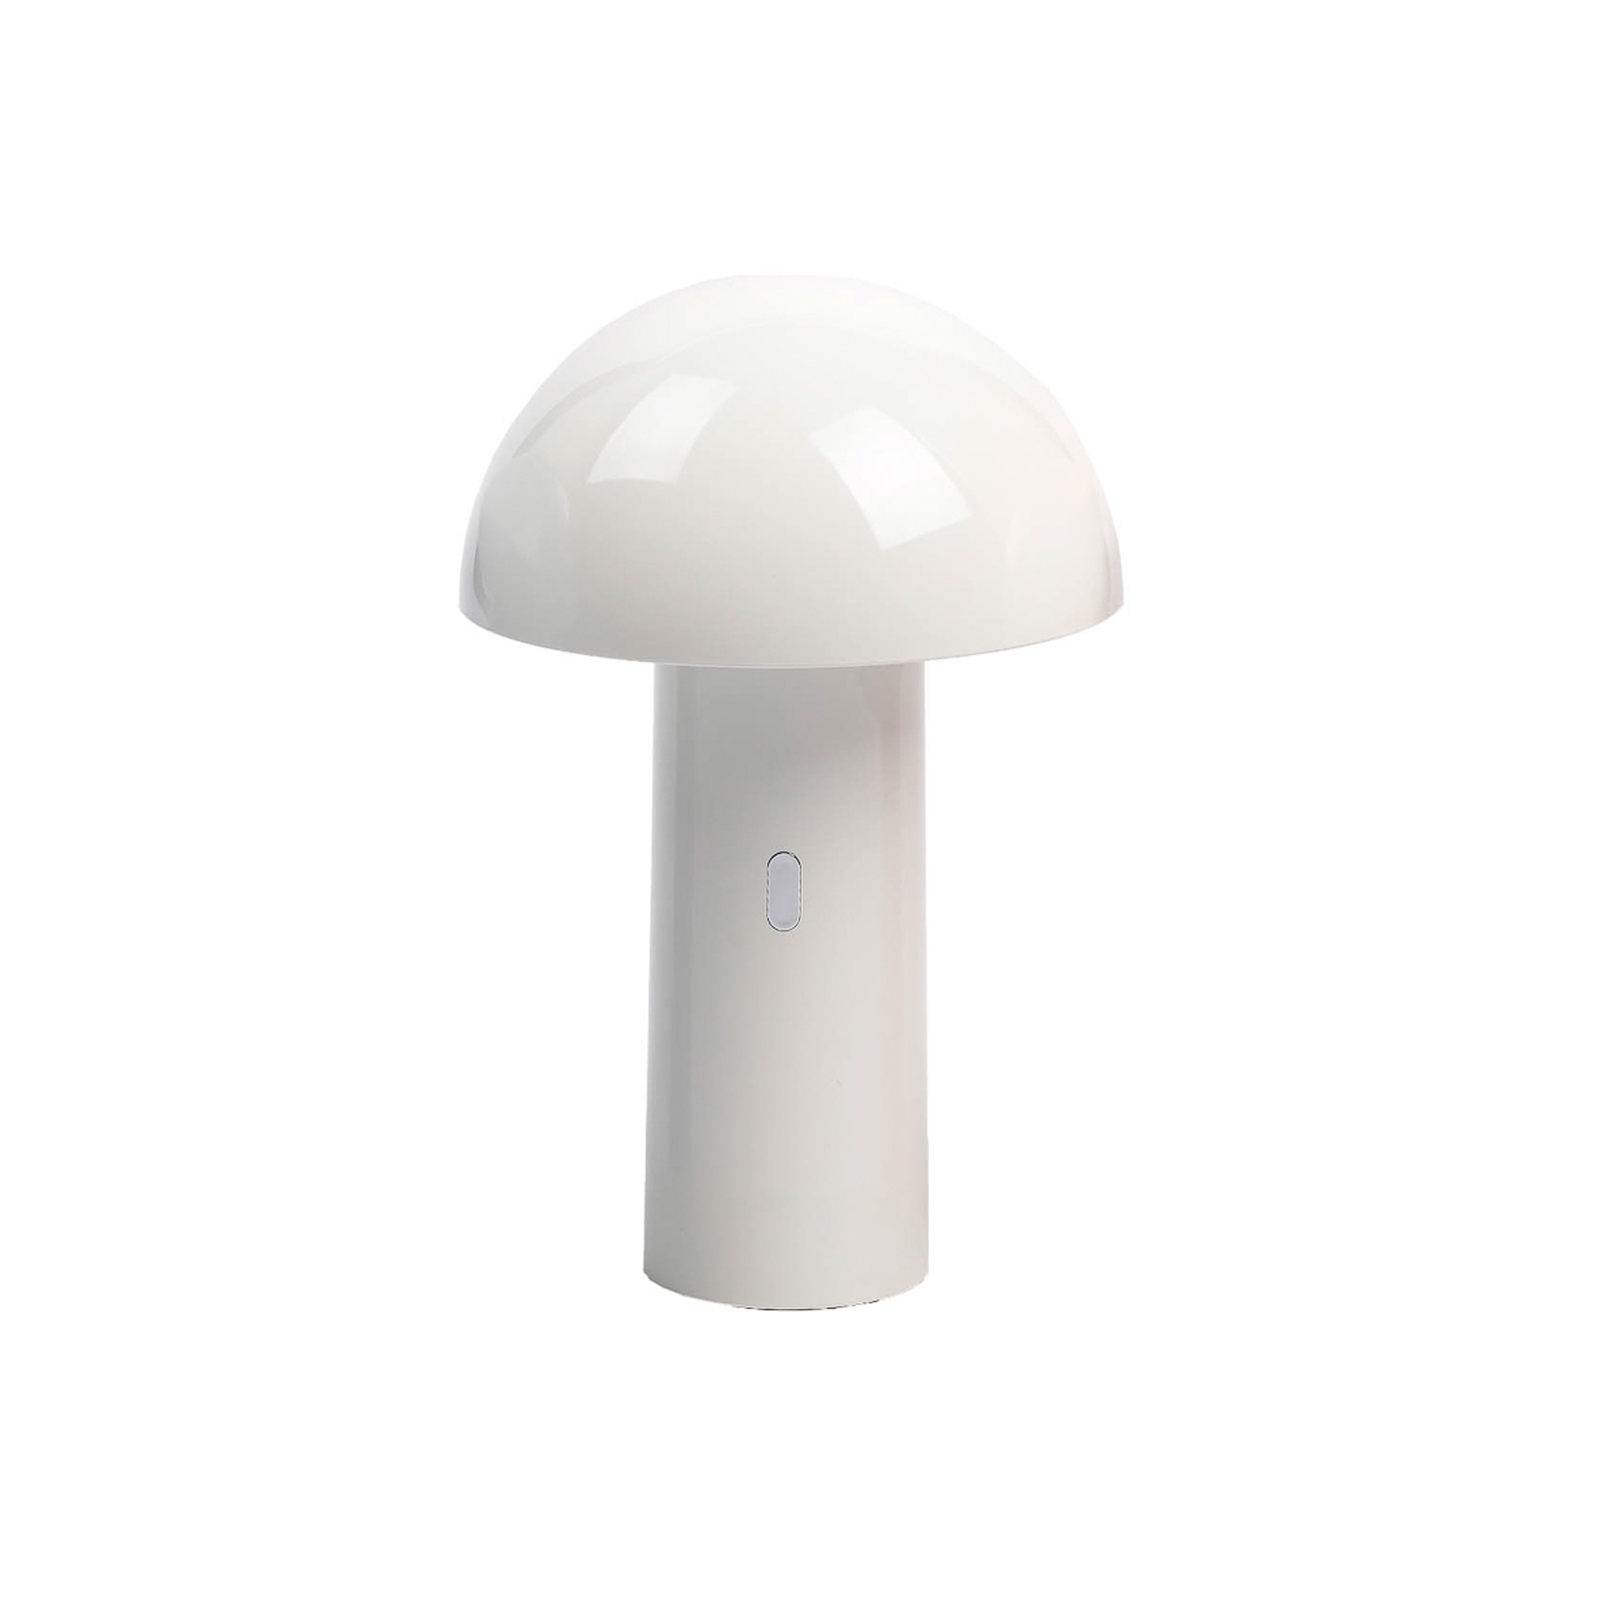 Aluminor Capsule LED tafellamp, mobiel, wit